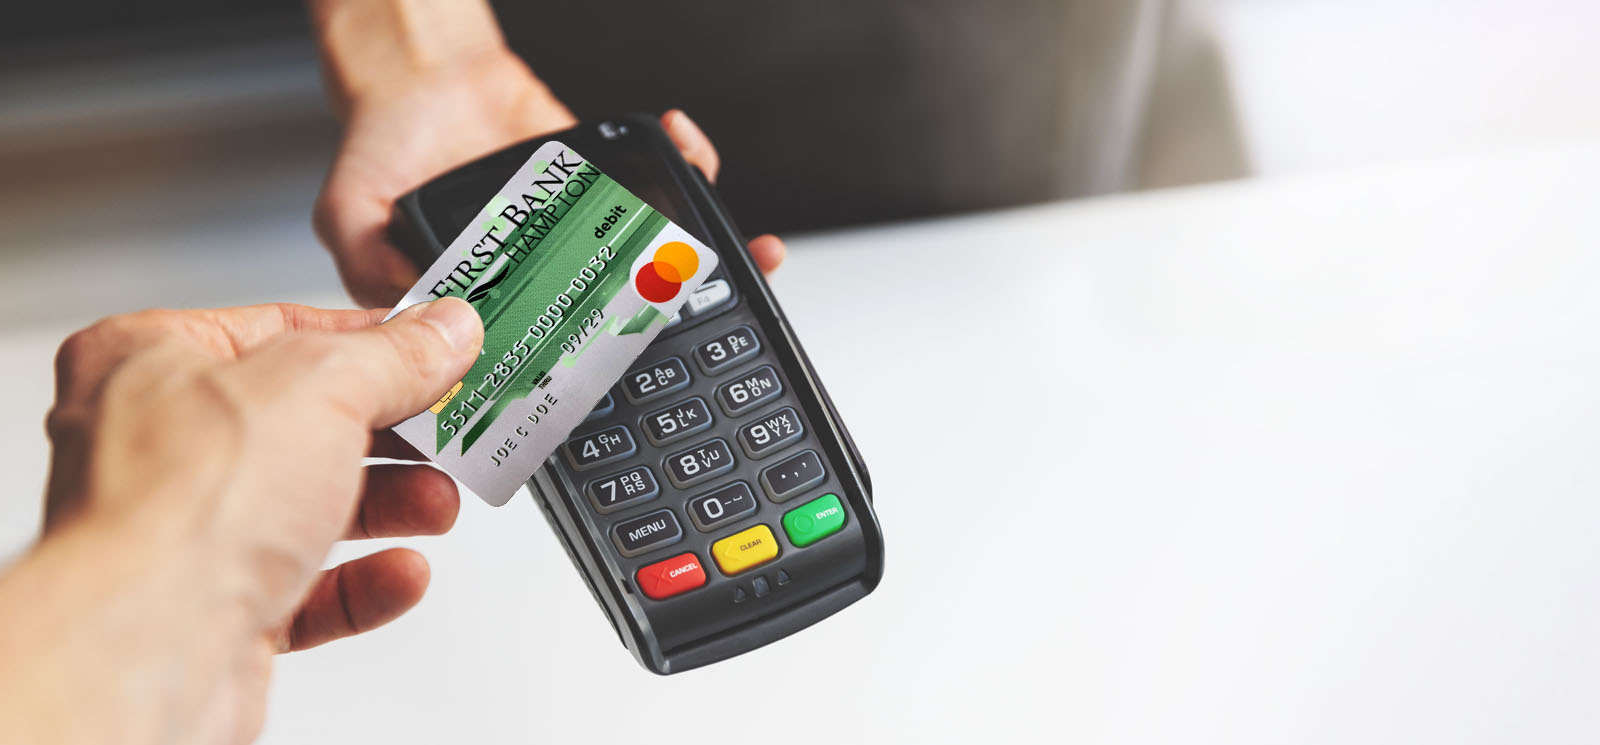 nfc contactless payment using First Bank Hampton debit card at pos terminal.